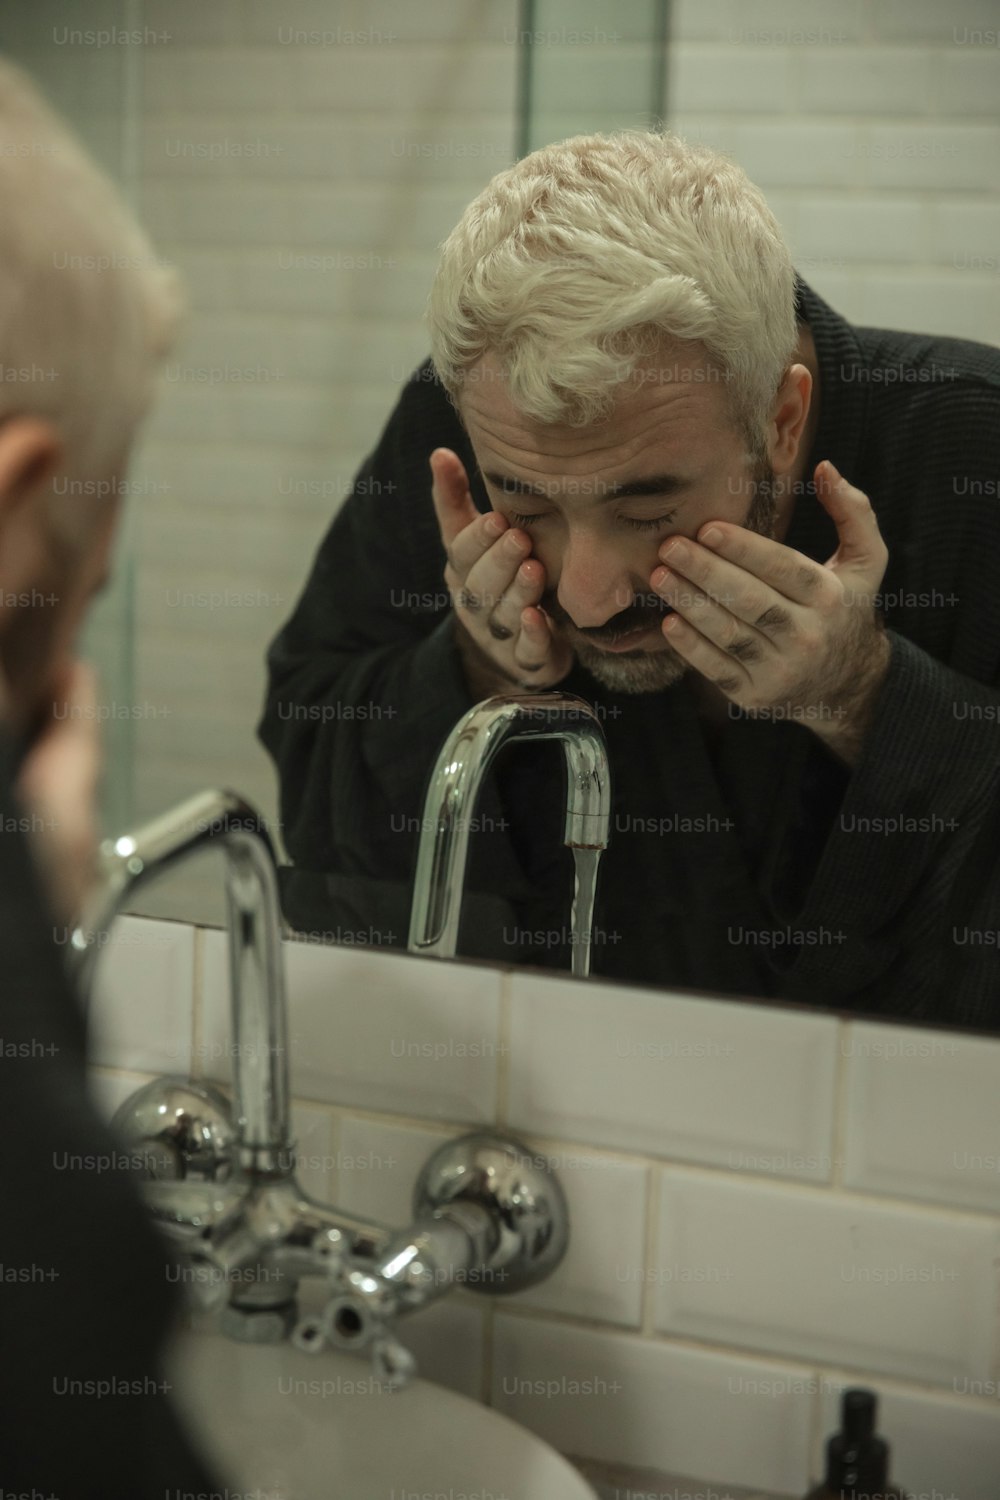 Un homme regarde son reflet dans le miroir